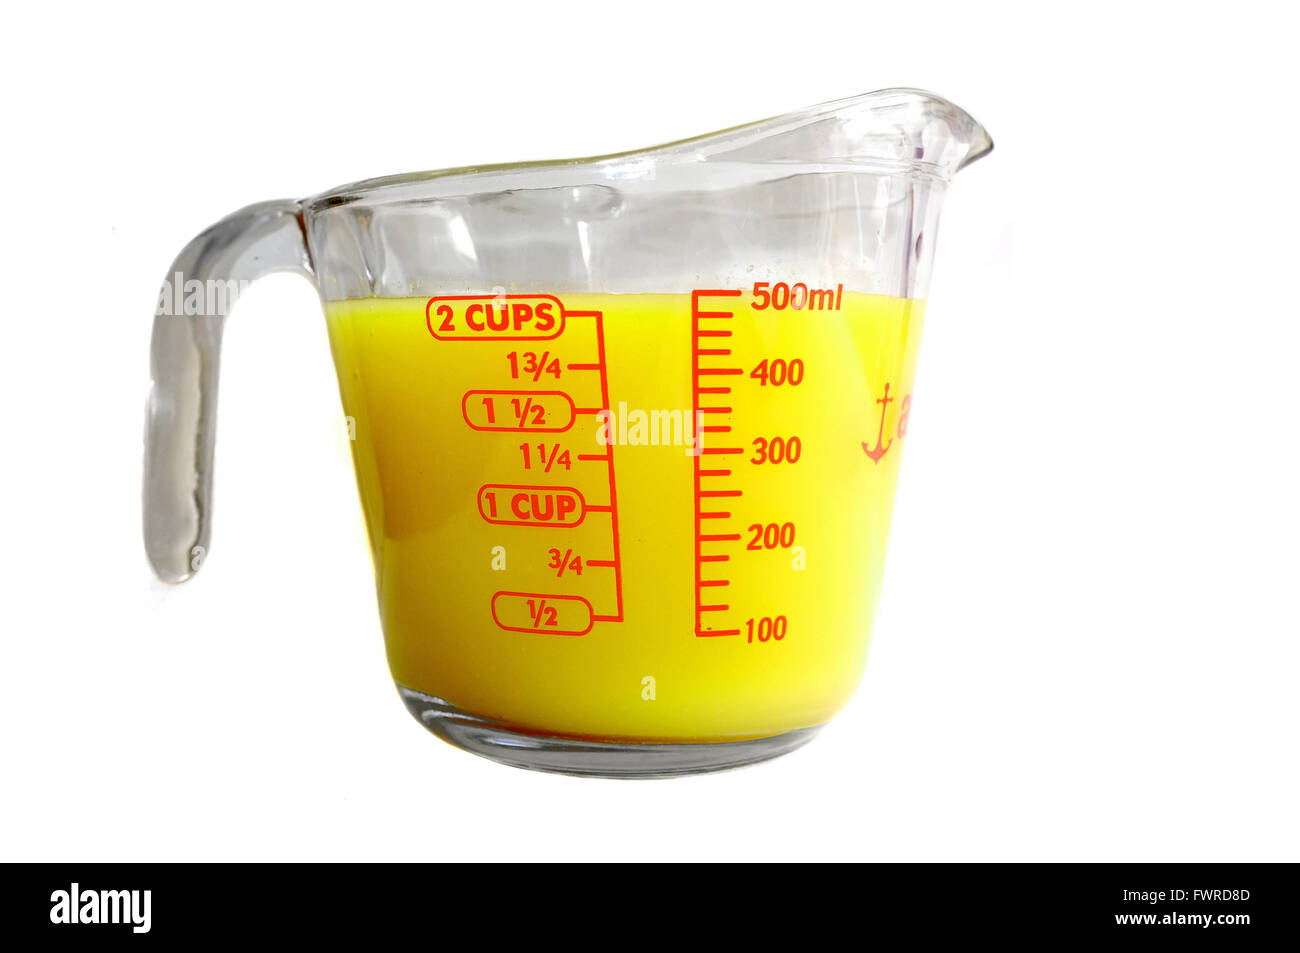 Ein Pyrex Messung Krug voller gelb gefärbten Flüssigkeit vor weißem Hintergrund fotografiert. Stockfoto